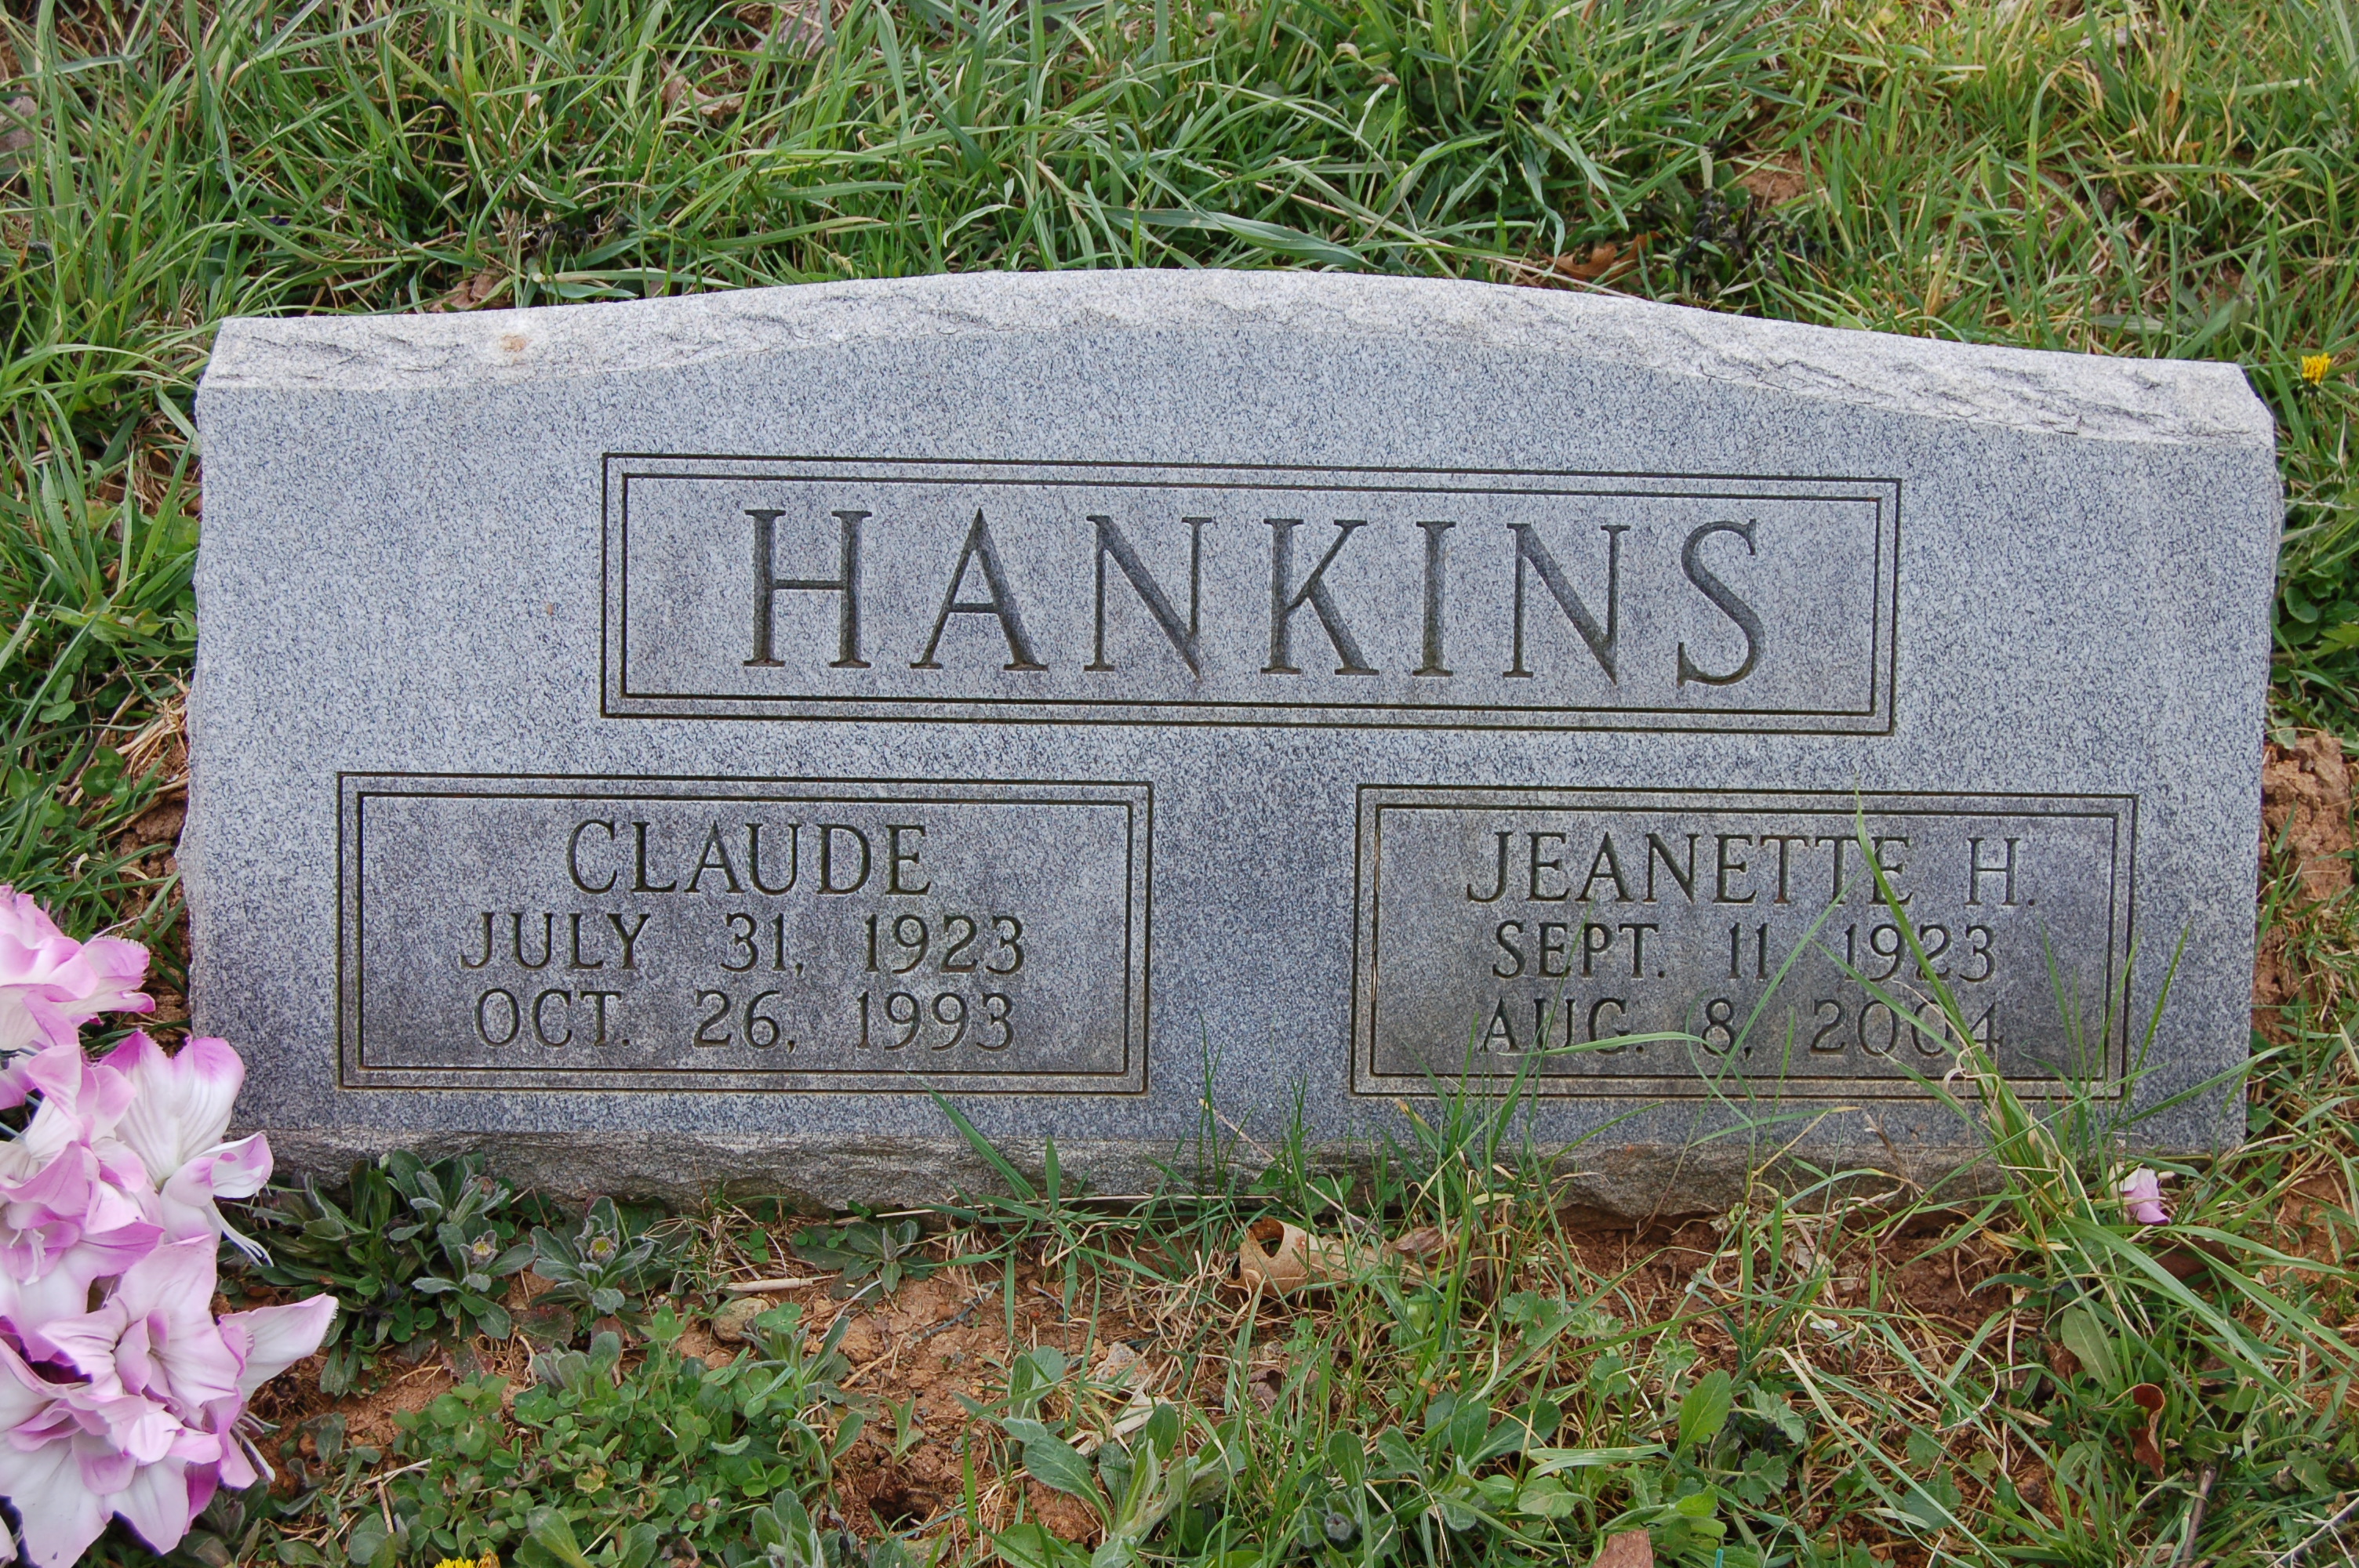 Jeanette Harrison Hankins (1923-2004)